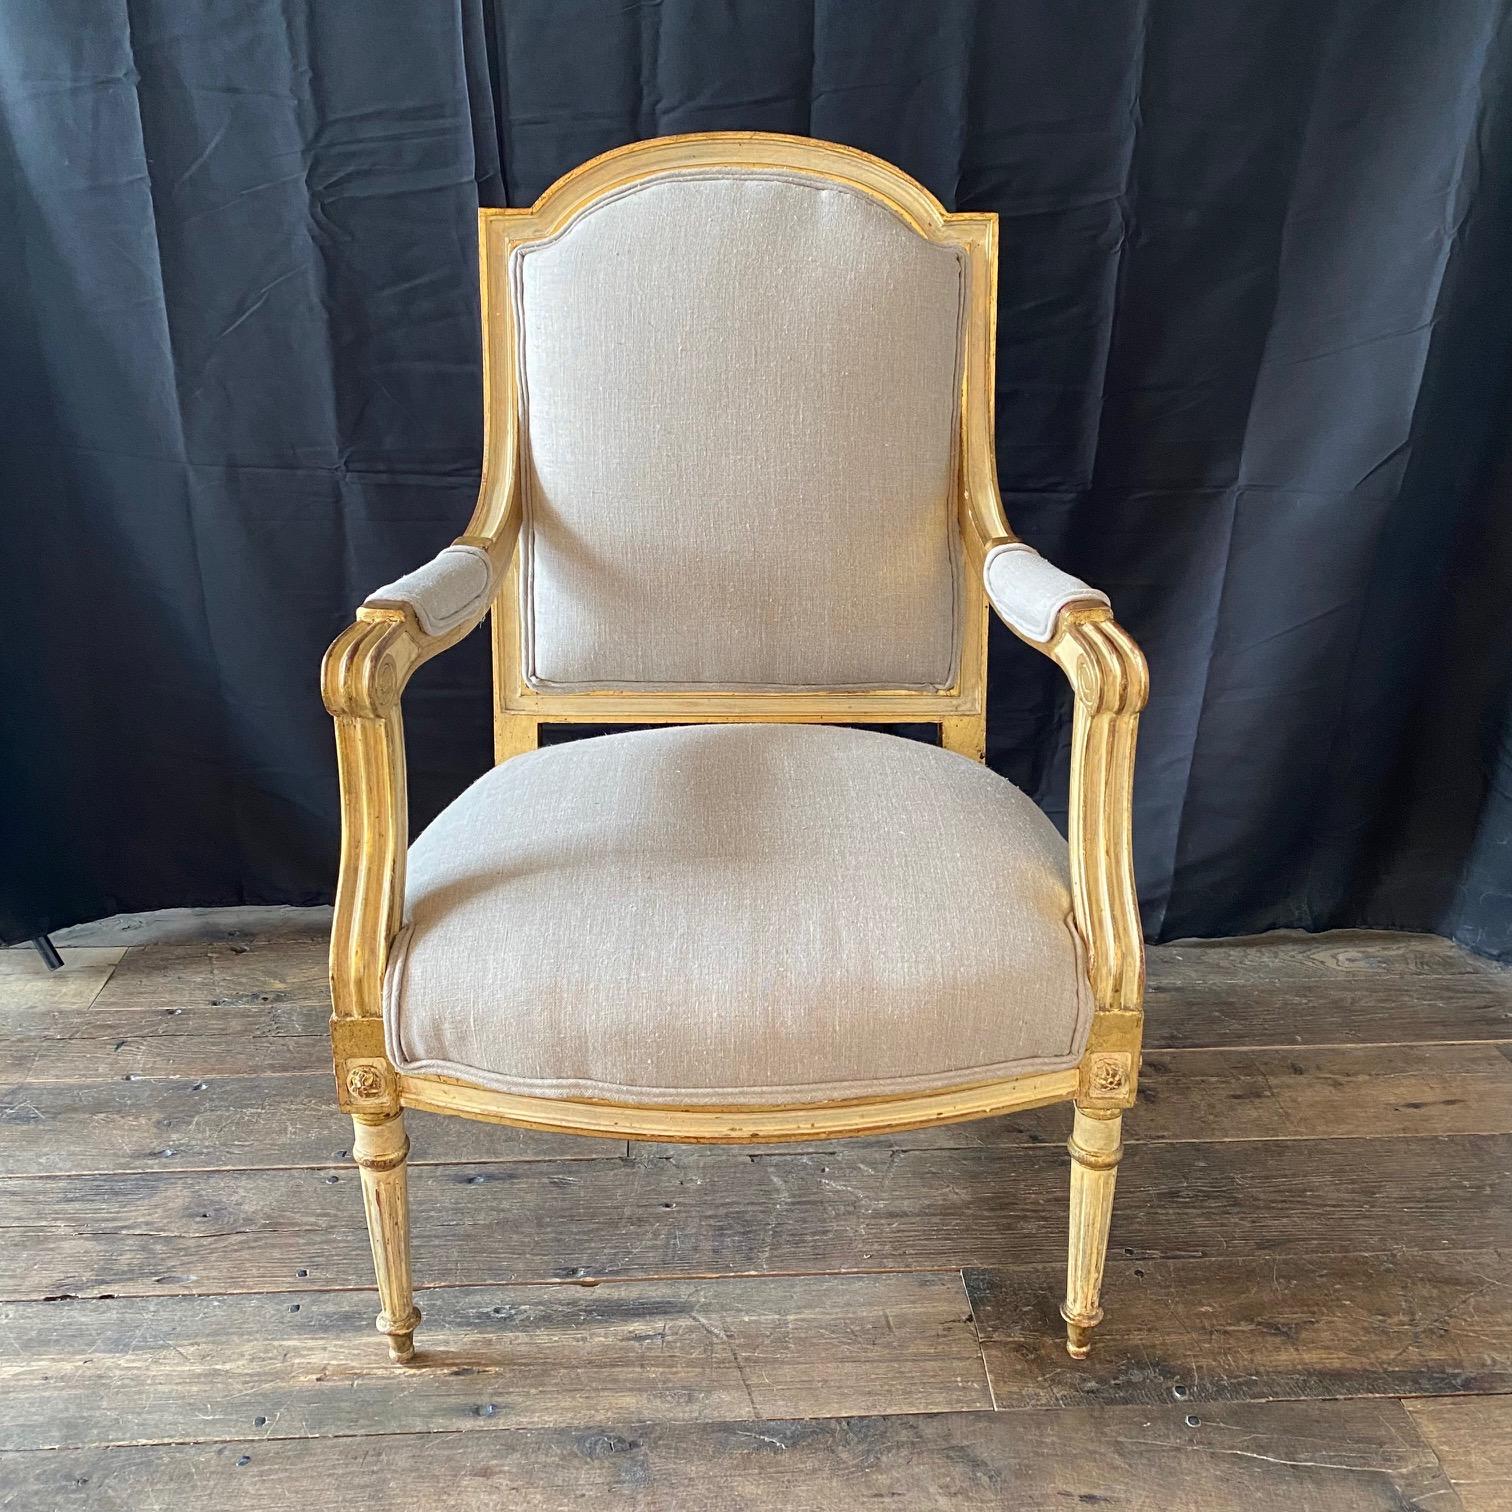 Élégante et très confortable paire de fauteuils en bois doré de style Louis XVI. Les deux châssis présentent des cimaises arquées avec des dossiers rembourrés, des accoudoirs rembourrés se terminant par des poignées sculptées sur des sièges aux